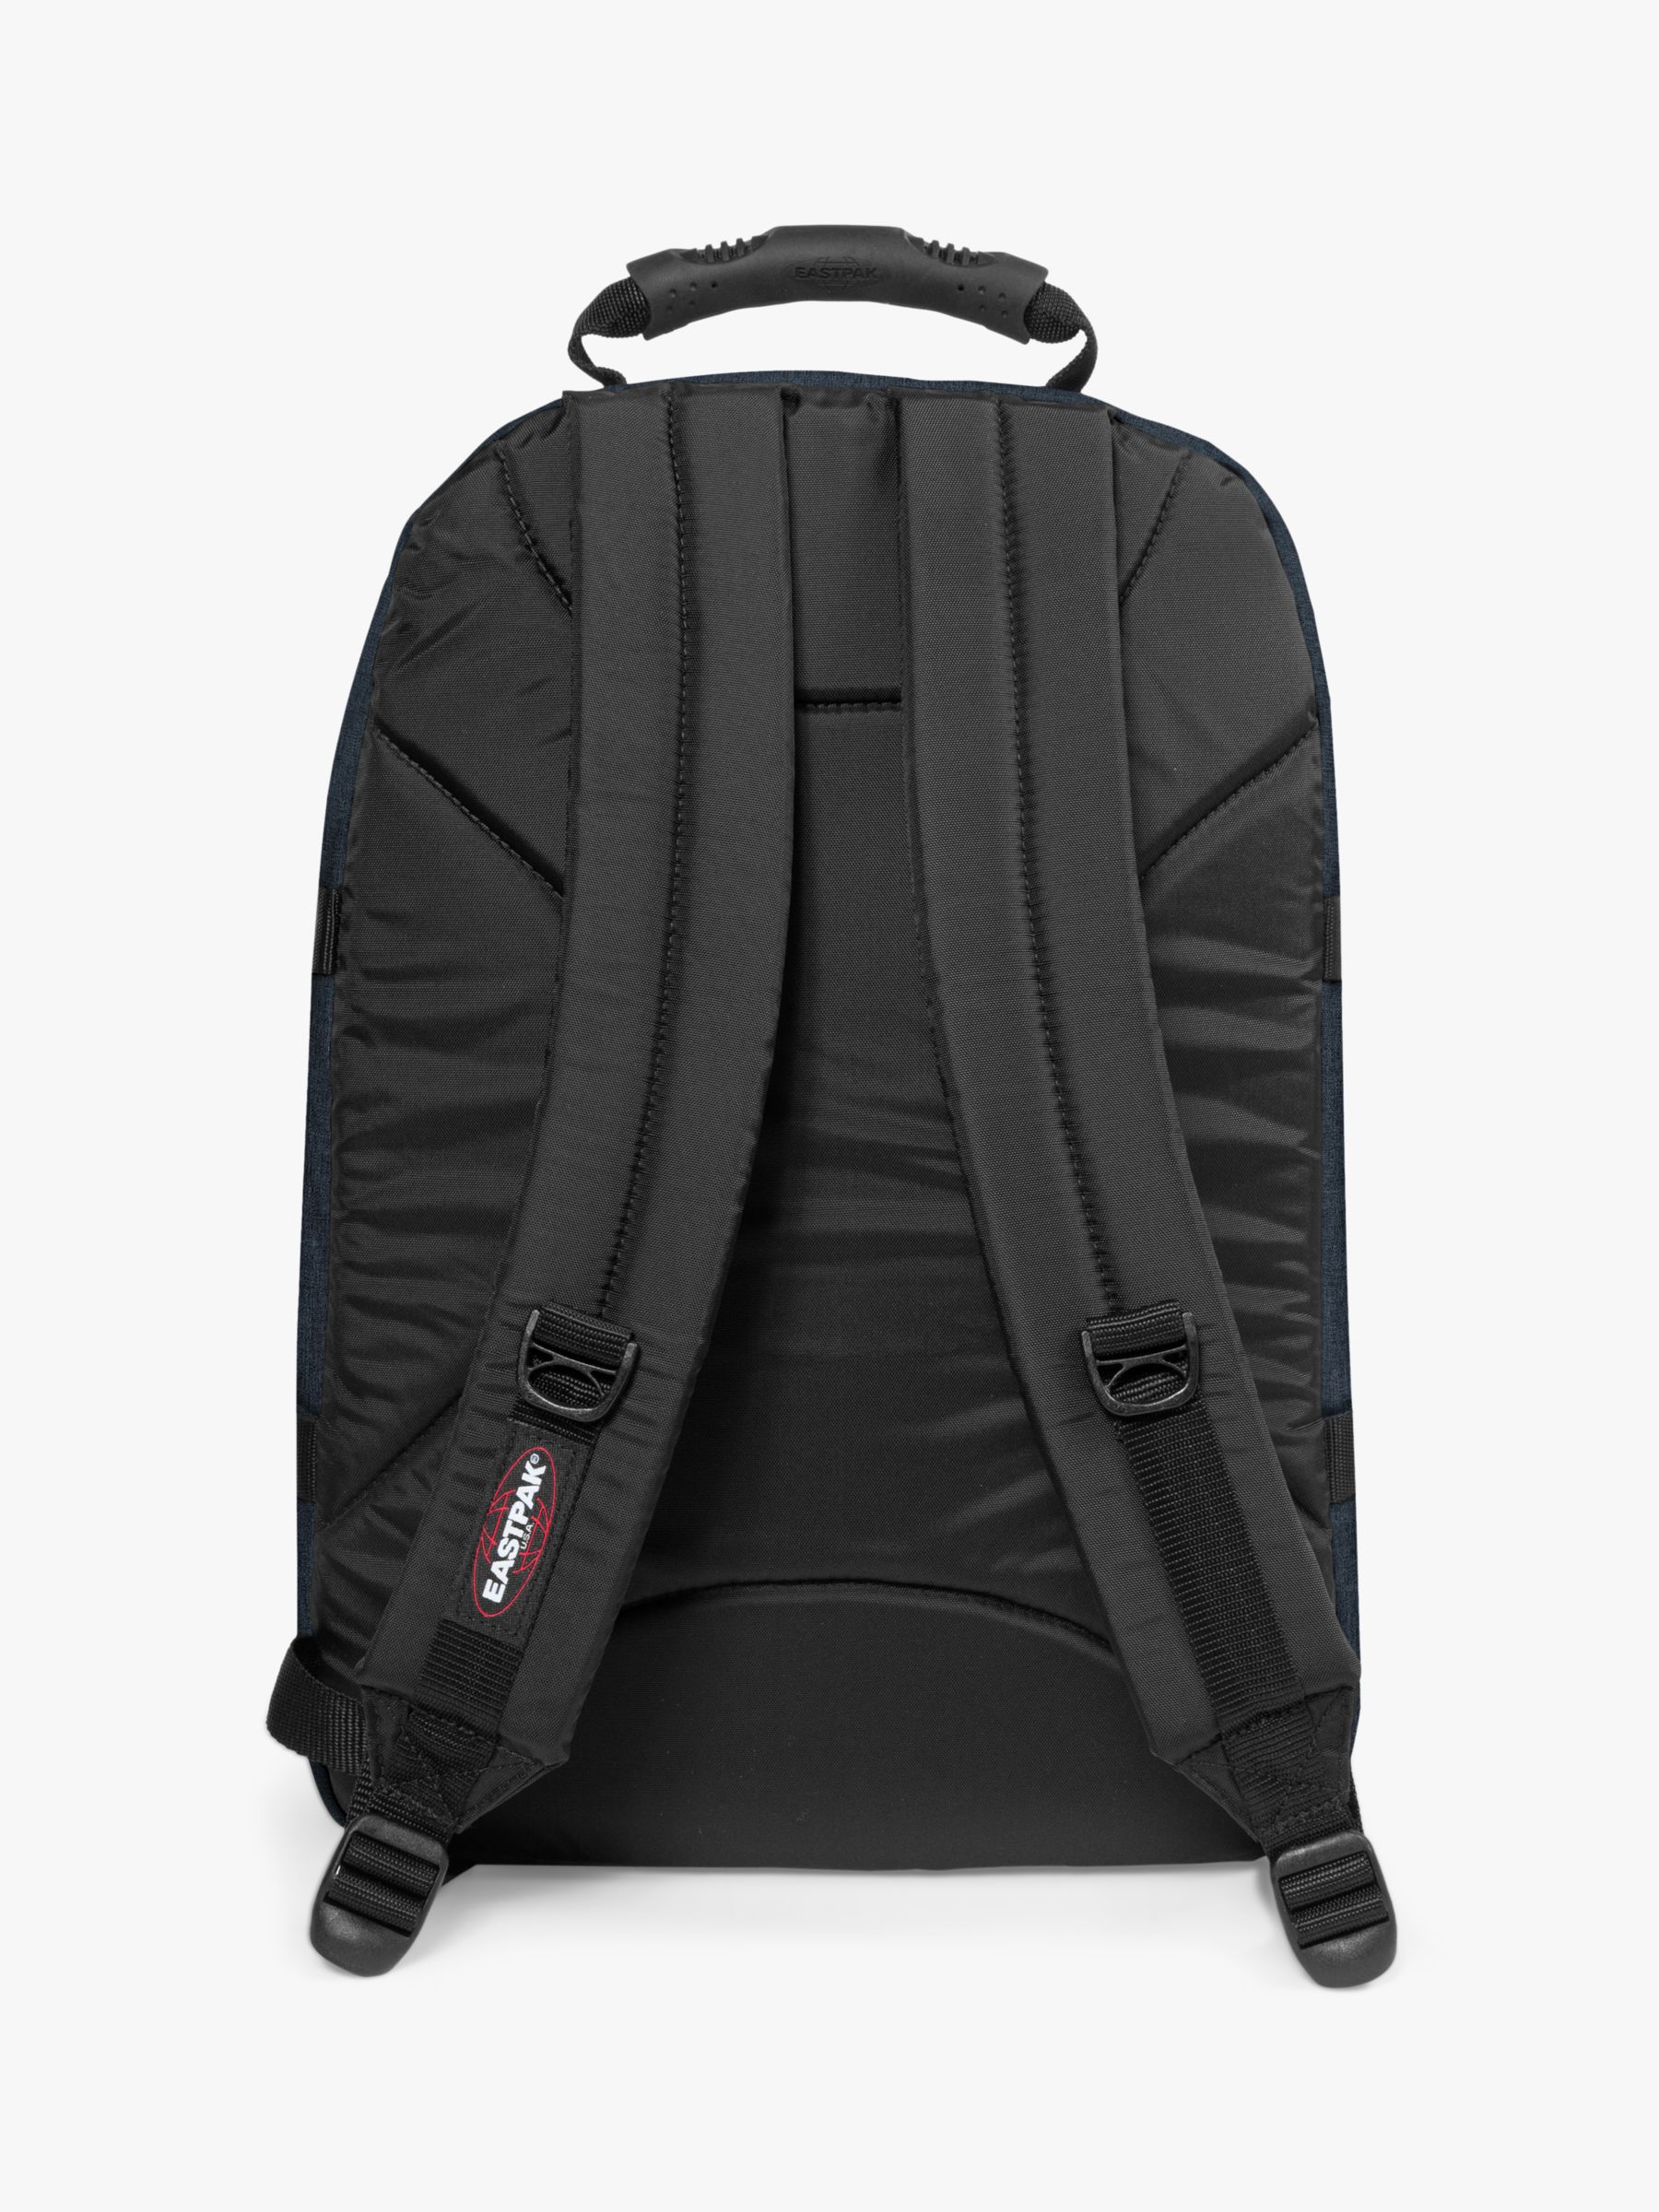 Buy Eastpak Provider Laptop Backpack Online at johnlewis.com